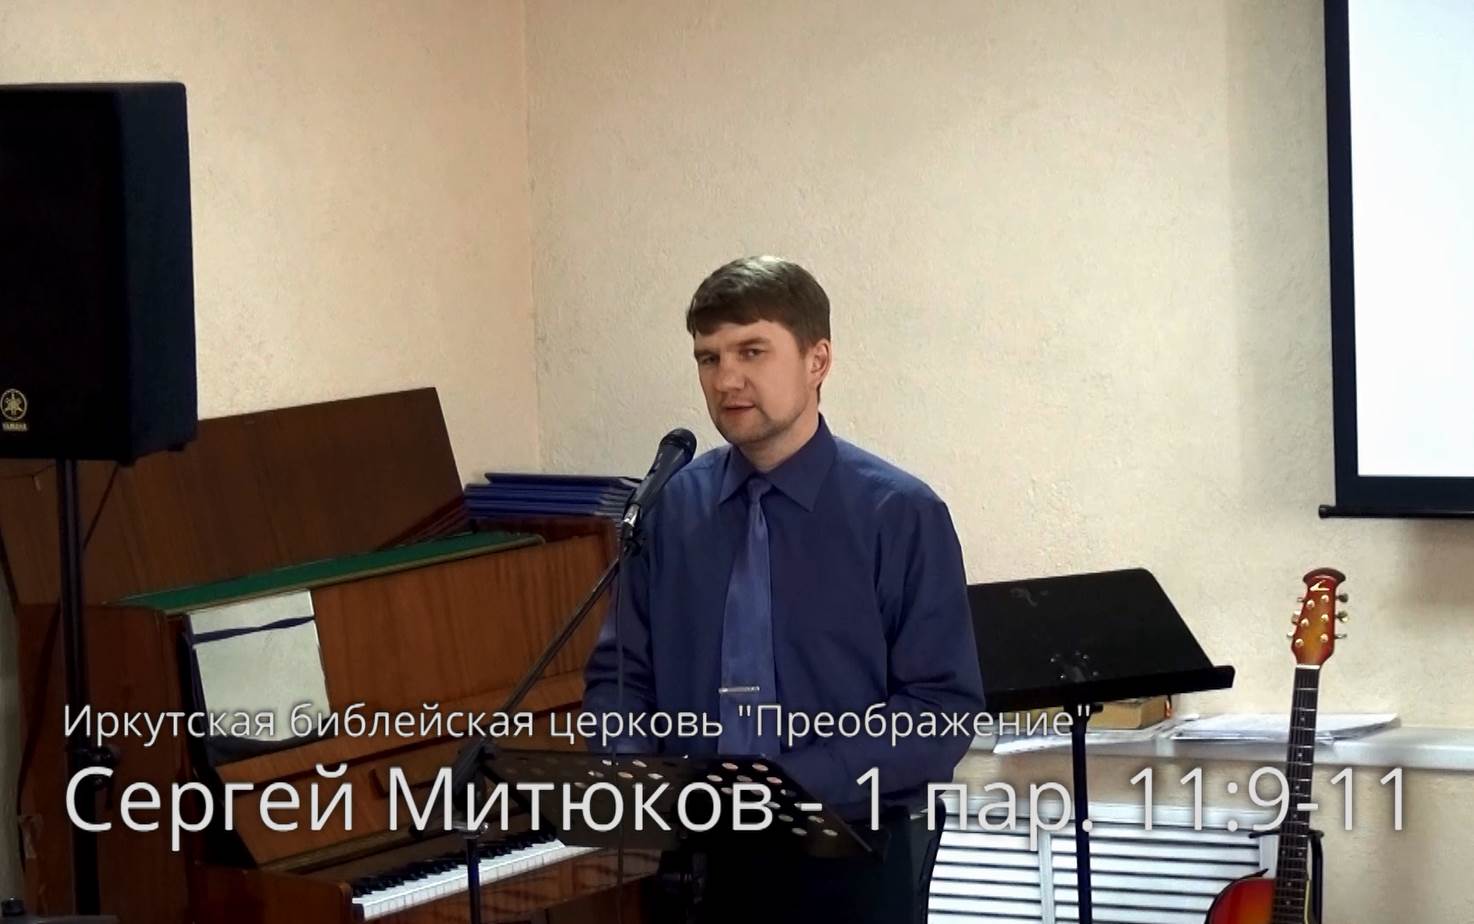 Сергей Митюков — «Воины Христа» (1 Пар. 11:9-11)